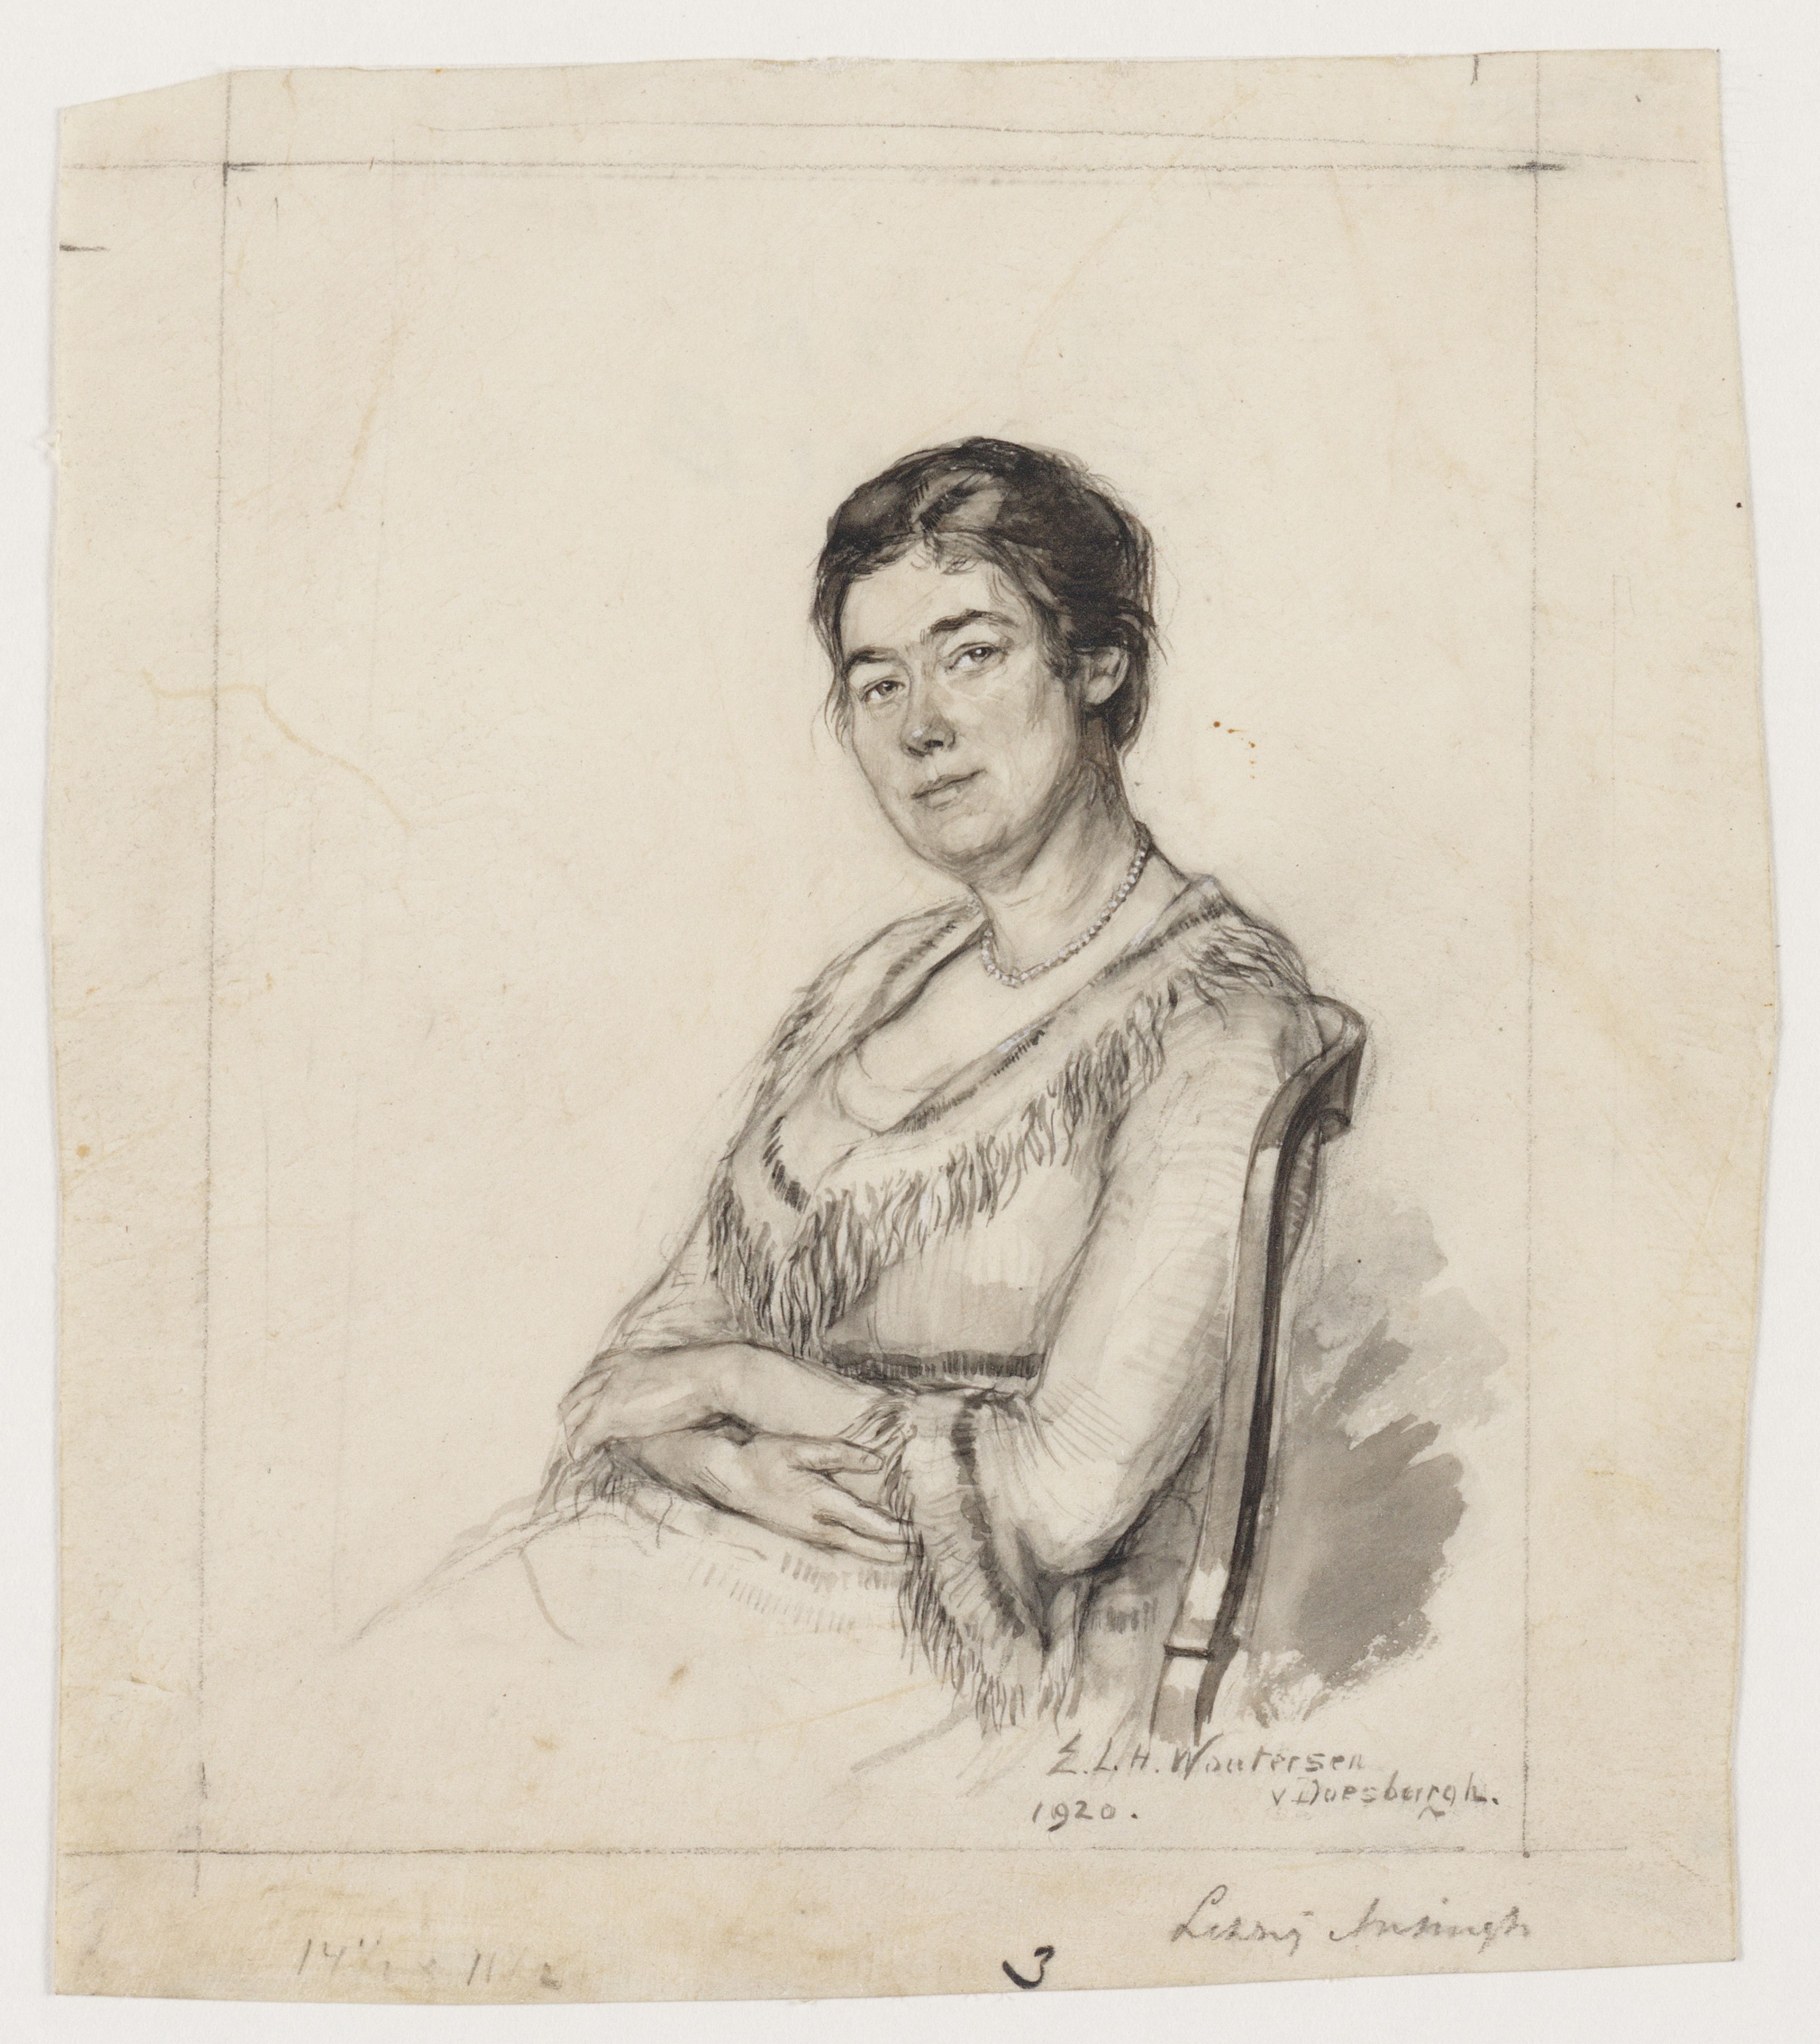 Elsa Woutersen-van Doesburgh, 'Portret van de schilderes Lizzy Ansingh', 1920.